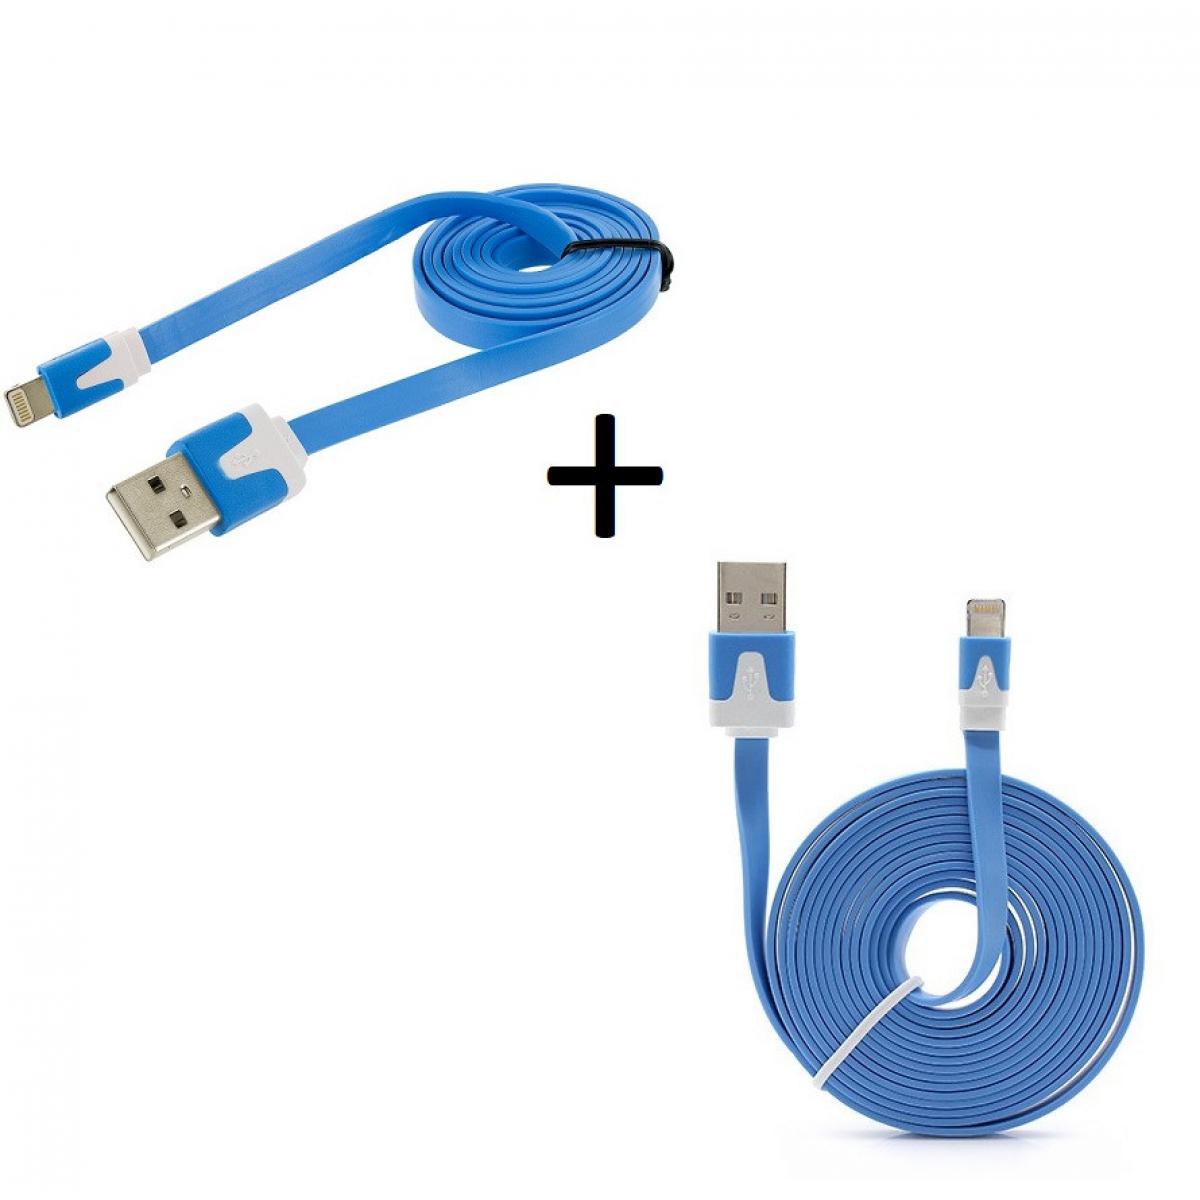 Shot - Pack Chargeur pour "IPHONE 12 Pro" Lightning (Cable Noodle 3m + Cable Noodle 1m) USBIOS (BLEU) - Chargeur secteur téléphone